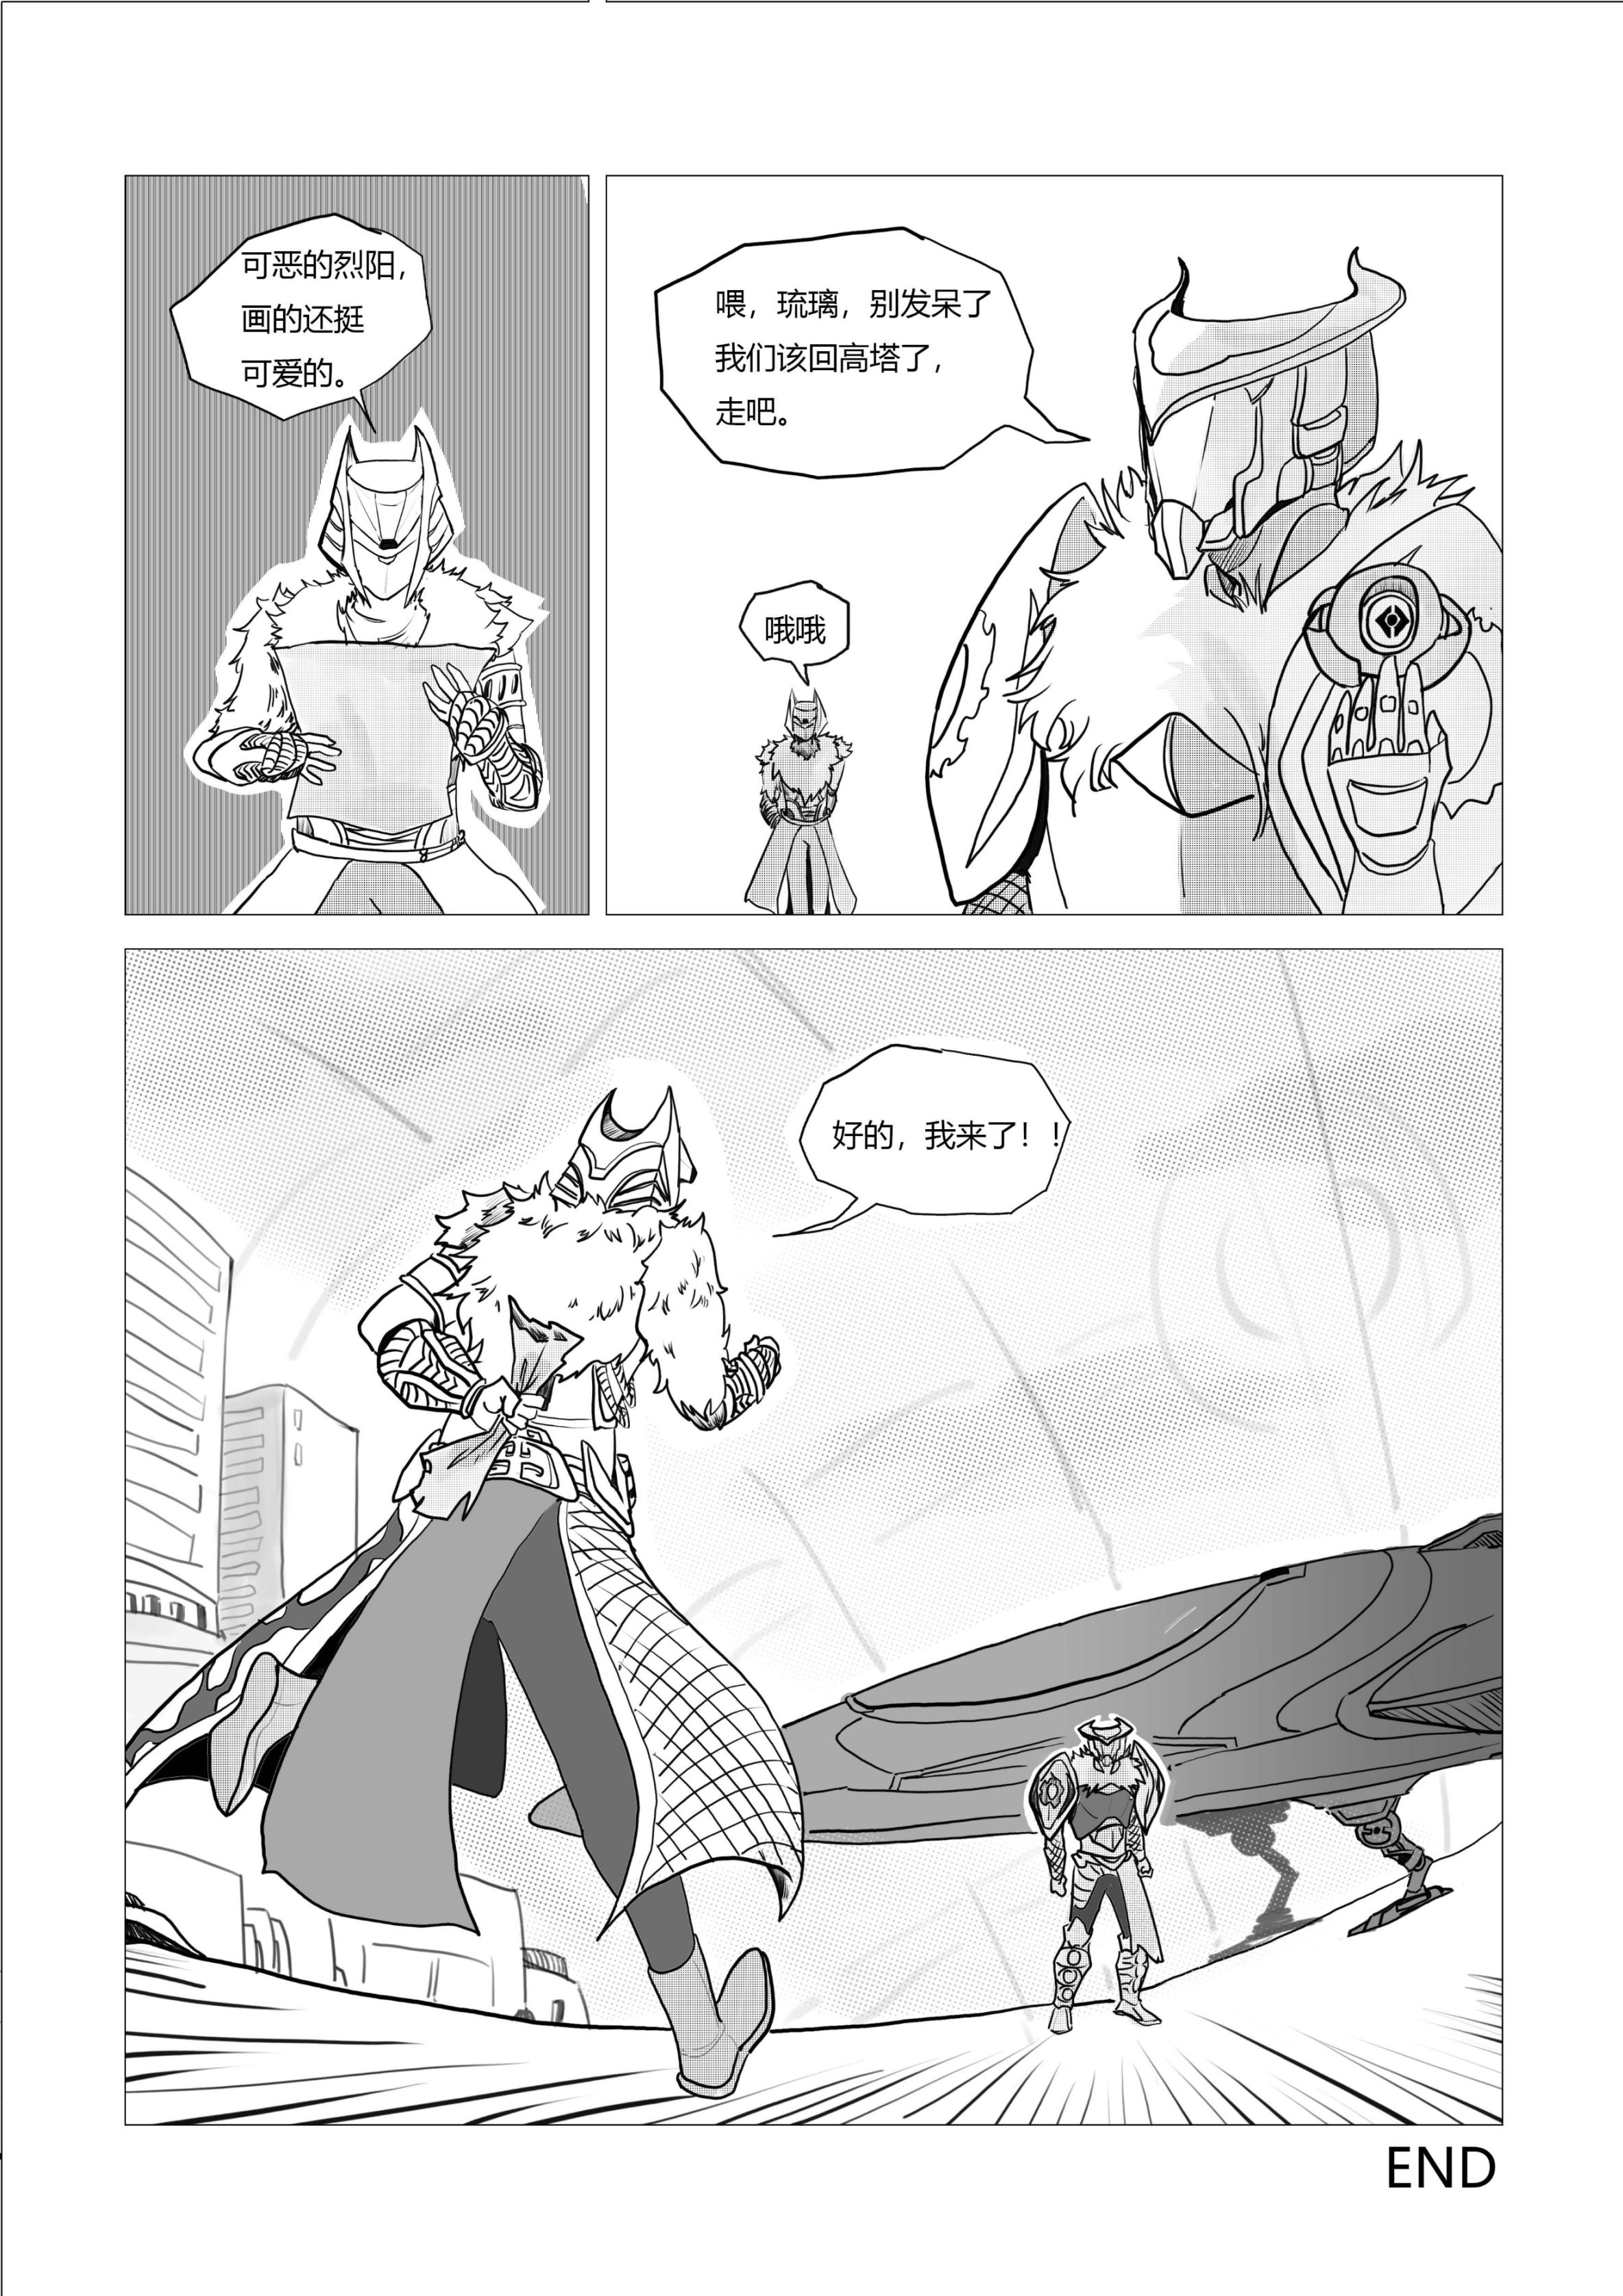 天命2原創戰鬥漫畫（不止於戰鬥）28頁-第27張